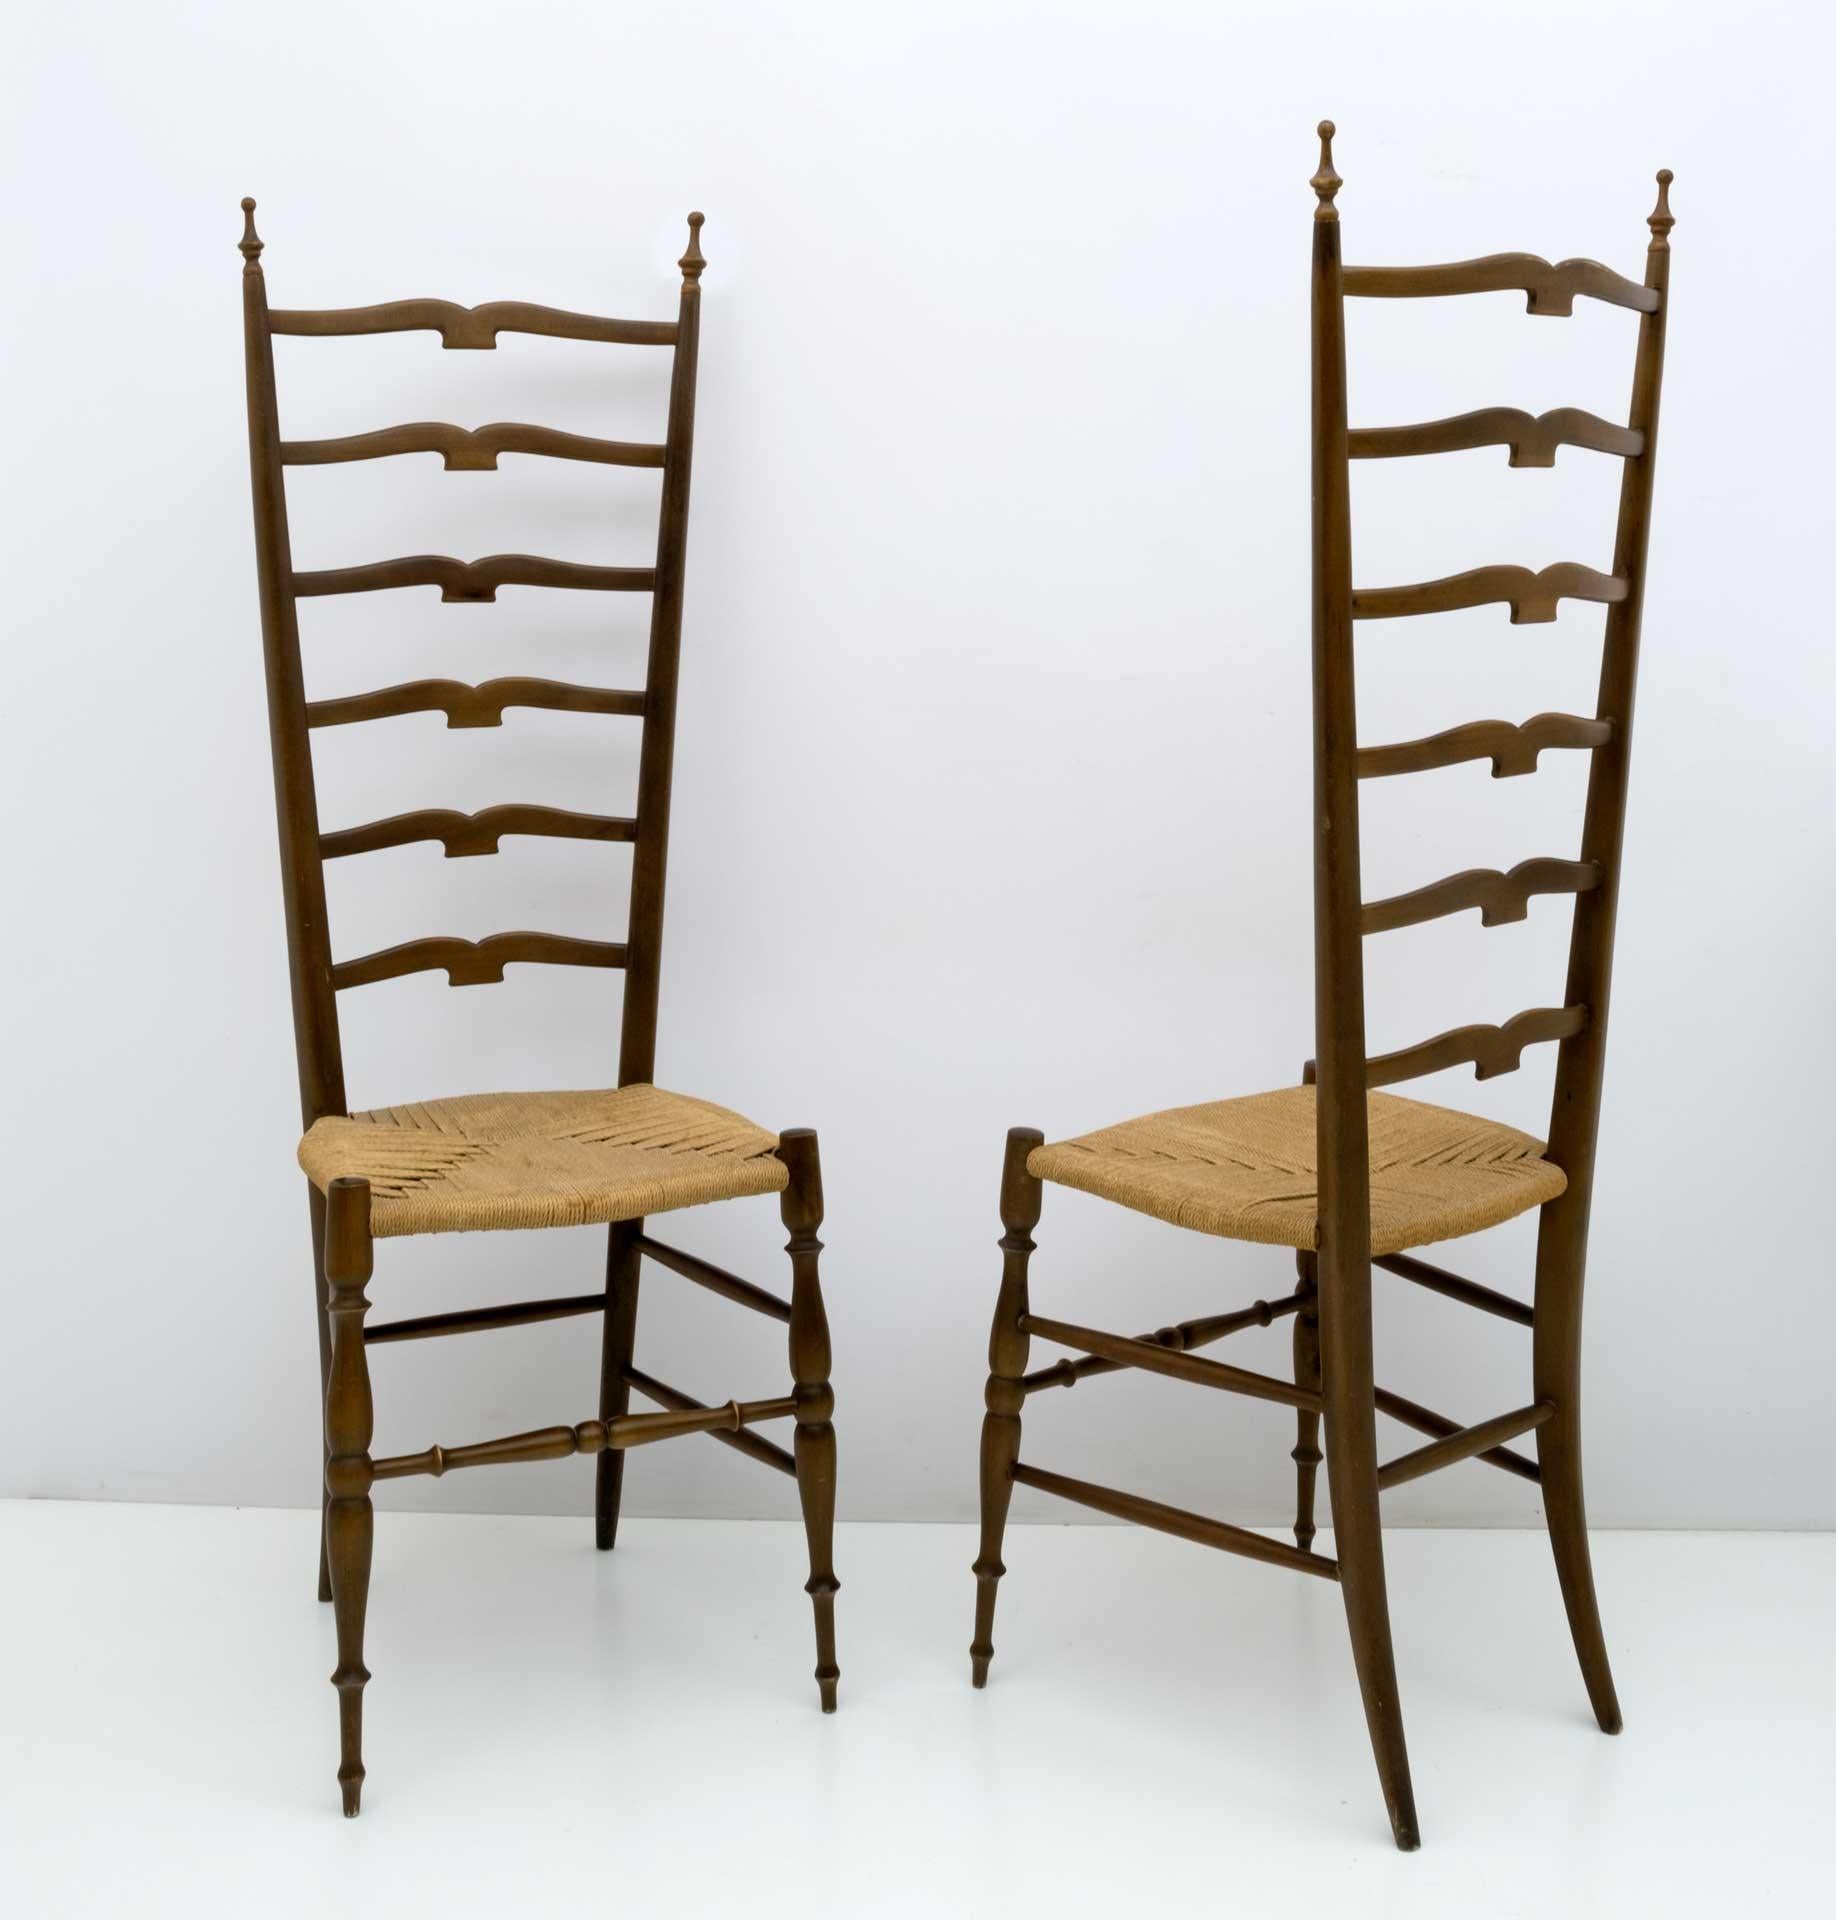 Ein Paar fantastischer Leiterstühle mit hoher Rückenlehne aus heller, nussbaumfarben gebeizter Buche und originalen Juteseilsitzen aus der Zeit. Diese erstaunlichen Stücke wurden von Paolo Buffa Chiavari in den 1950er Jahren in Italien entworfen.